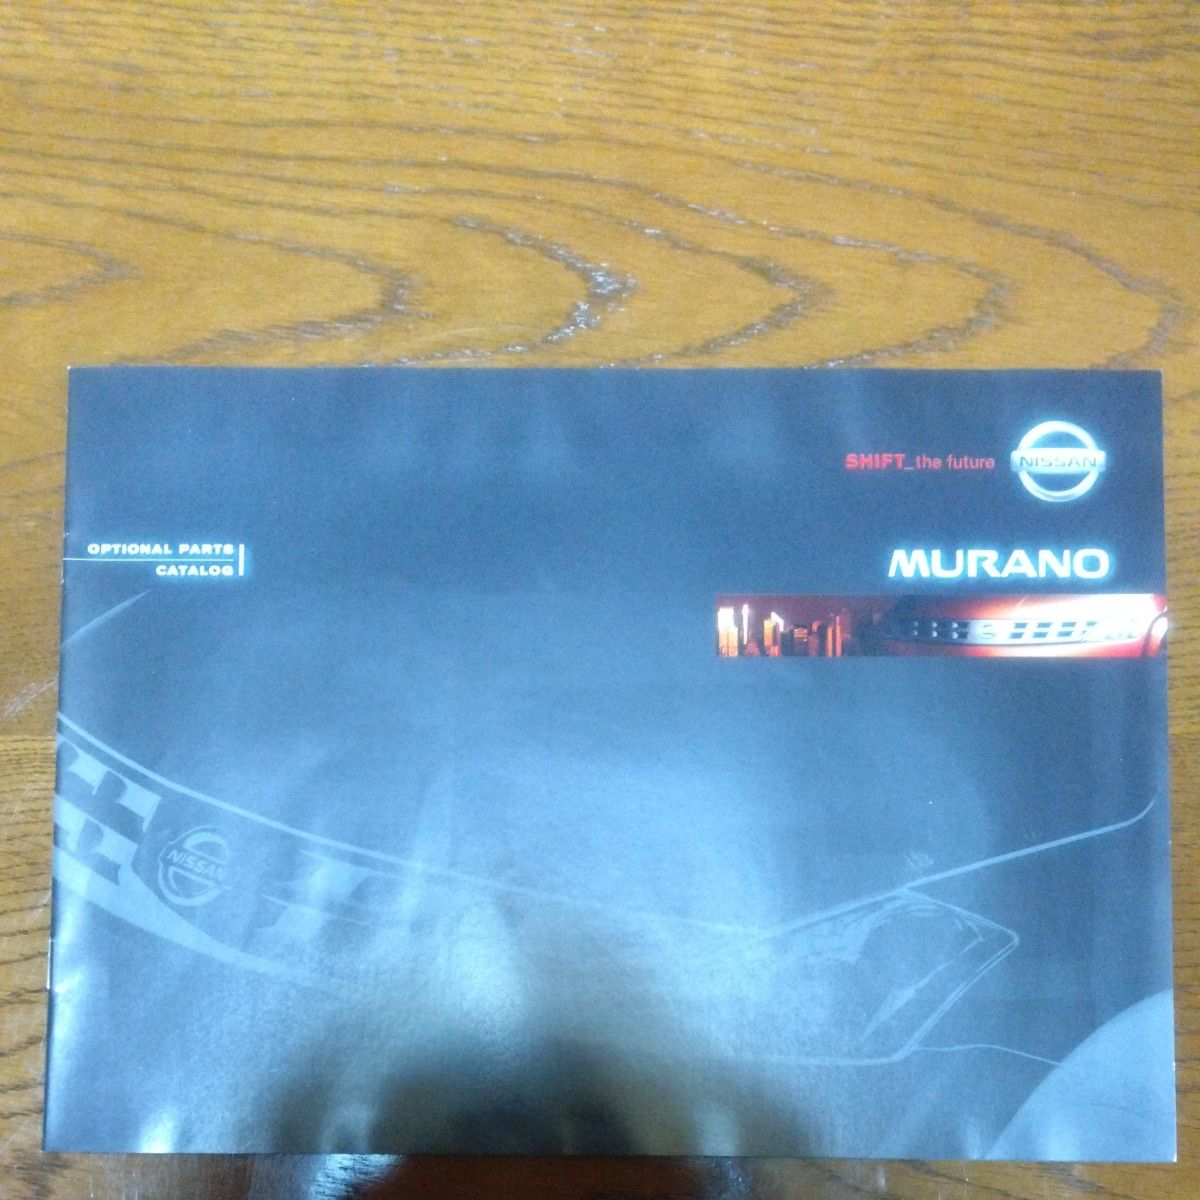 超美品 日産 ムラノ 2005年頃の新車カタログ 新品未使用品